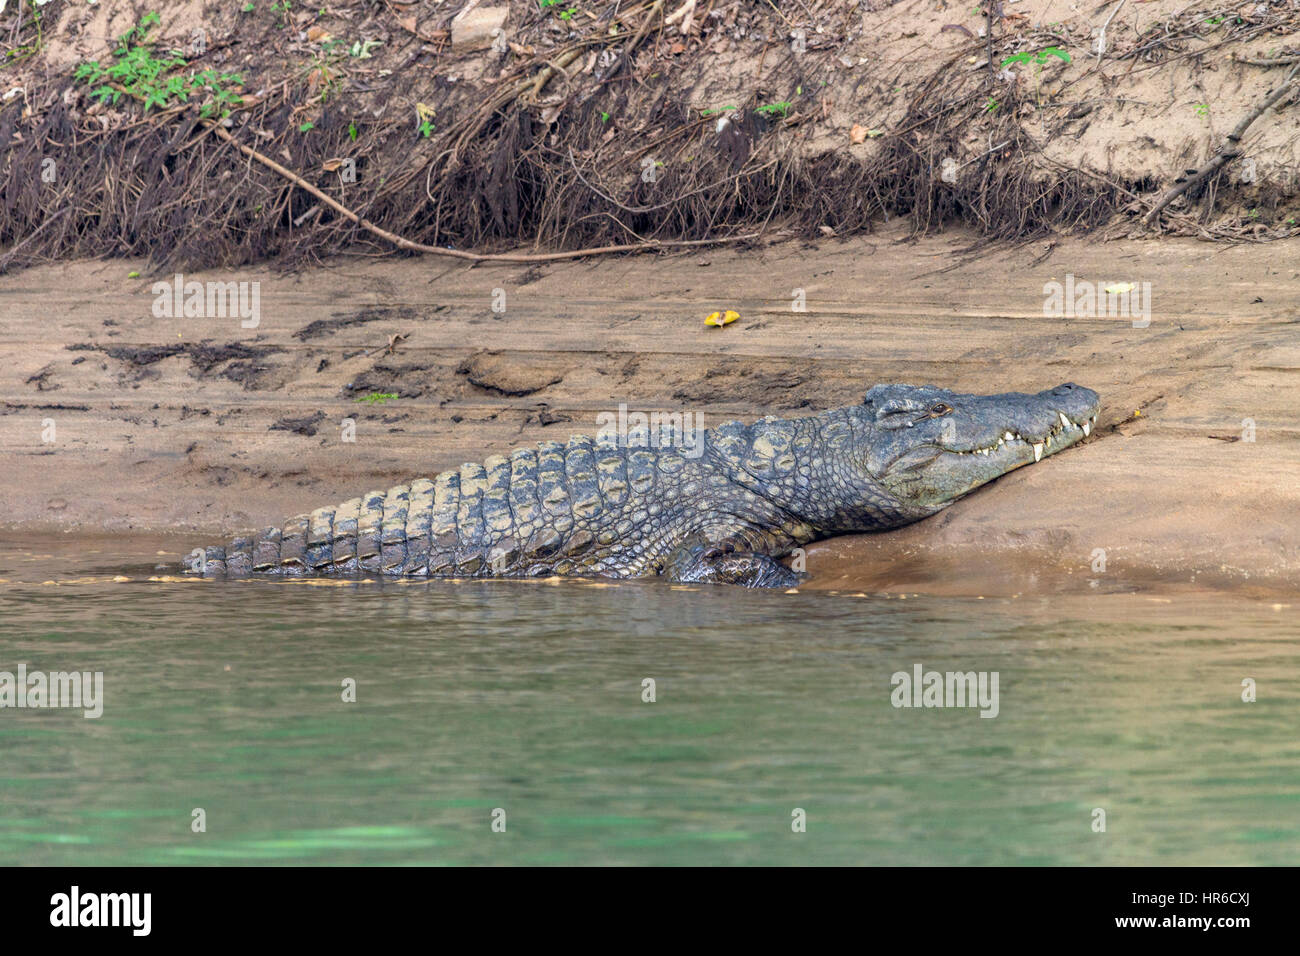 Un cocodrilo grande del Nilo Crocodylus niloticus se encuentra en un banco de arena en el río Zambezi. Foto de stock